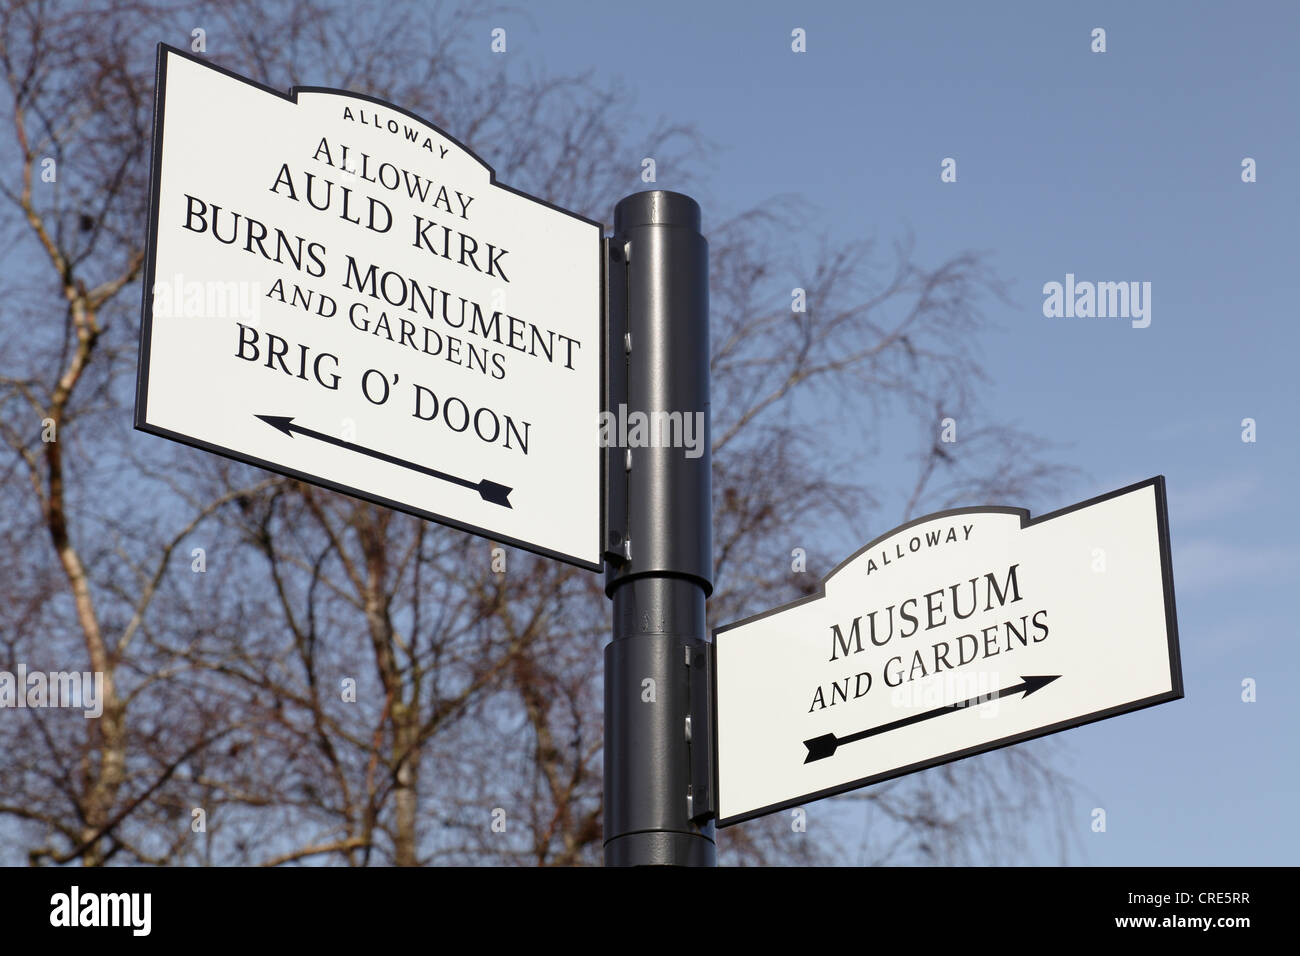 Robert Burns lugar de nacimiento Museo signo con las direcciones a Museo, Jardines, Alloway Auld Kirk, Monumento, Brig o Doon en Alloway, Ayrshire, Escocia, Reino Unido Foto de stock